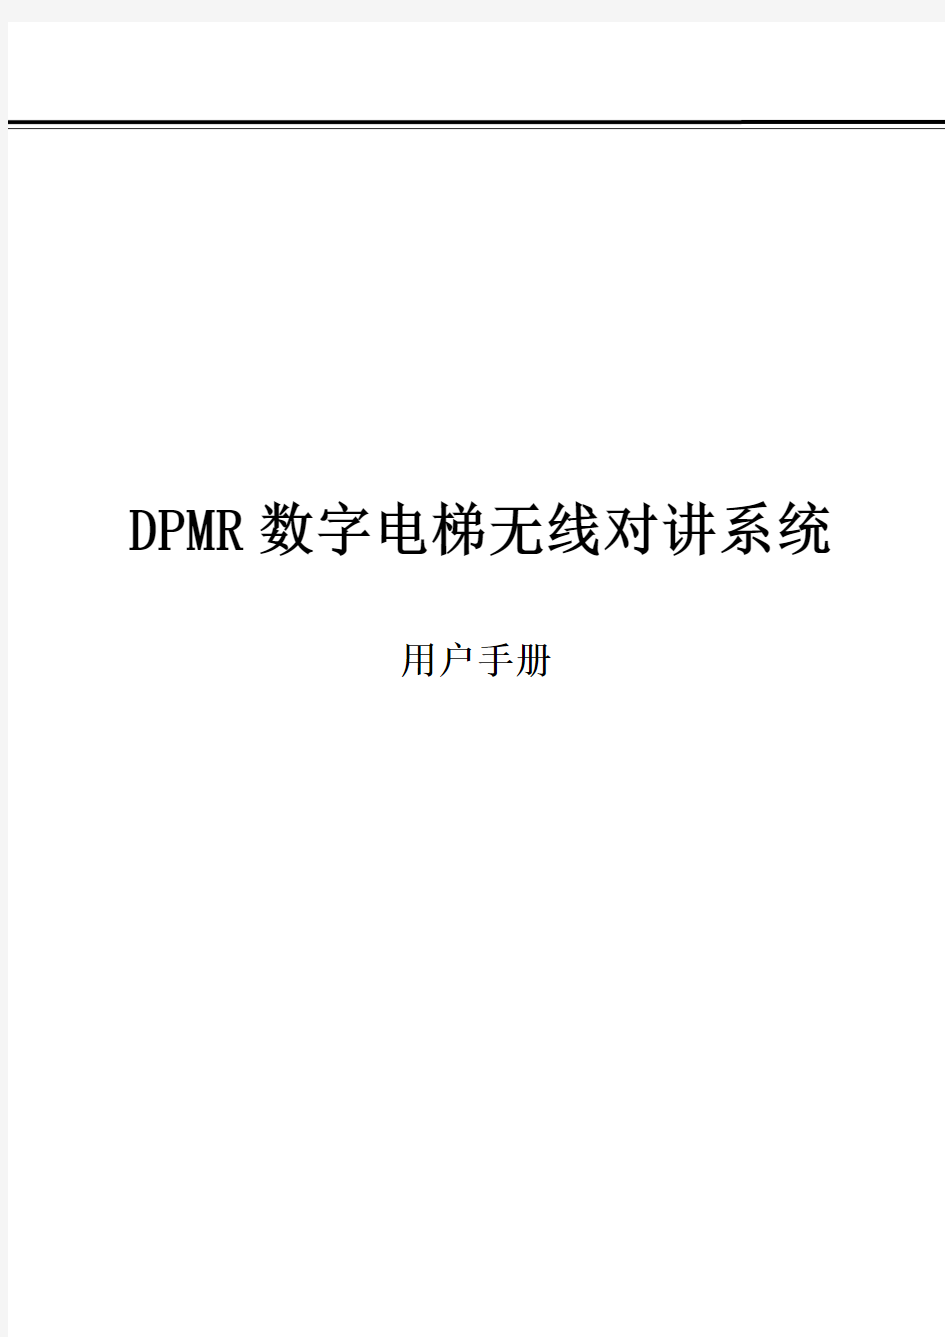 数字DPMR无线对讲系统使用说明书